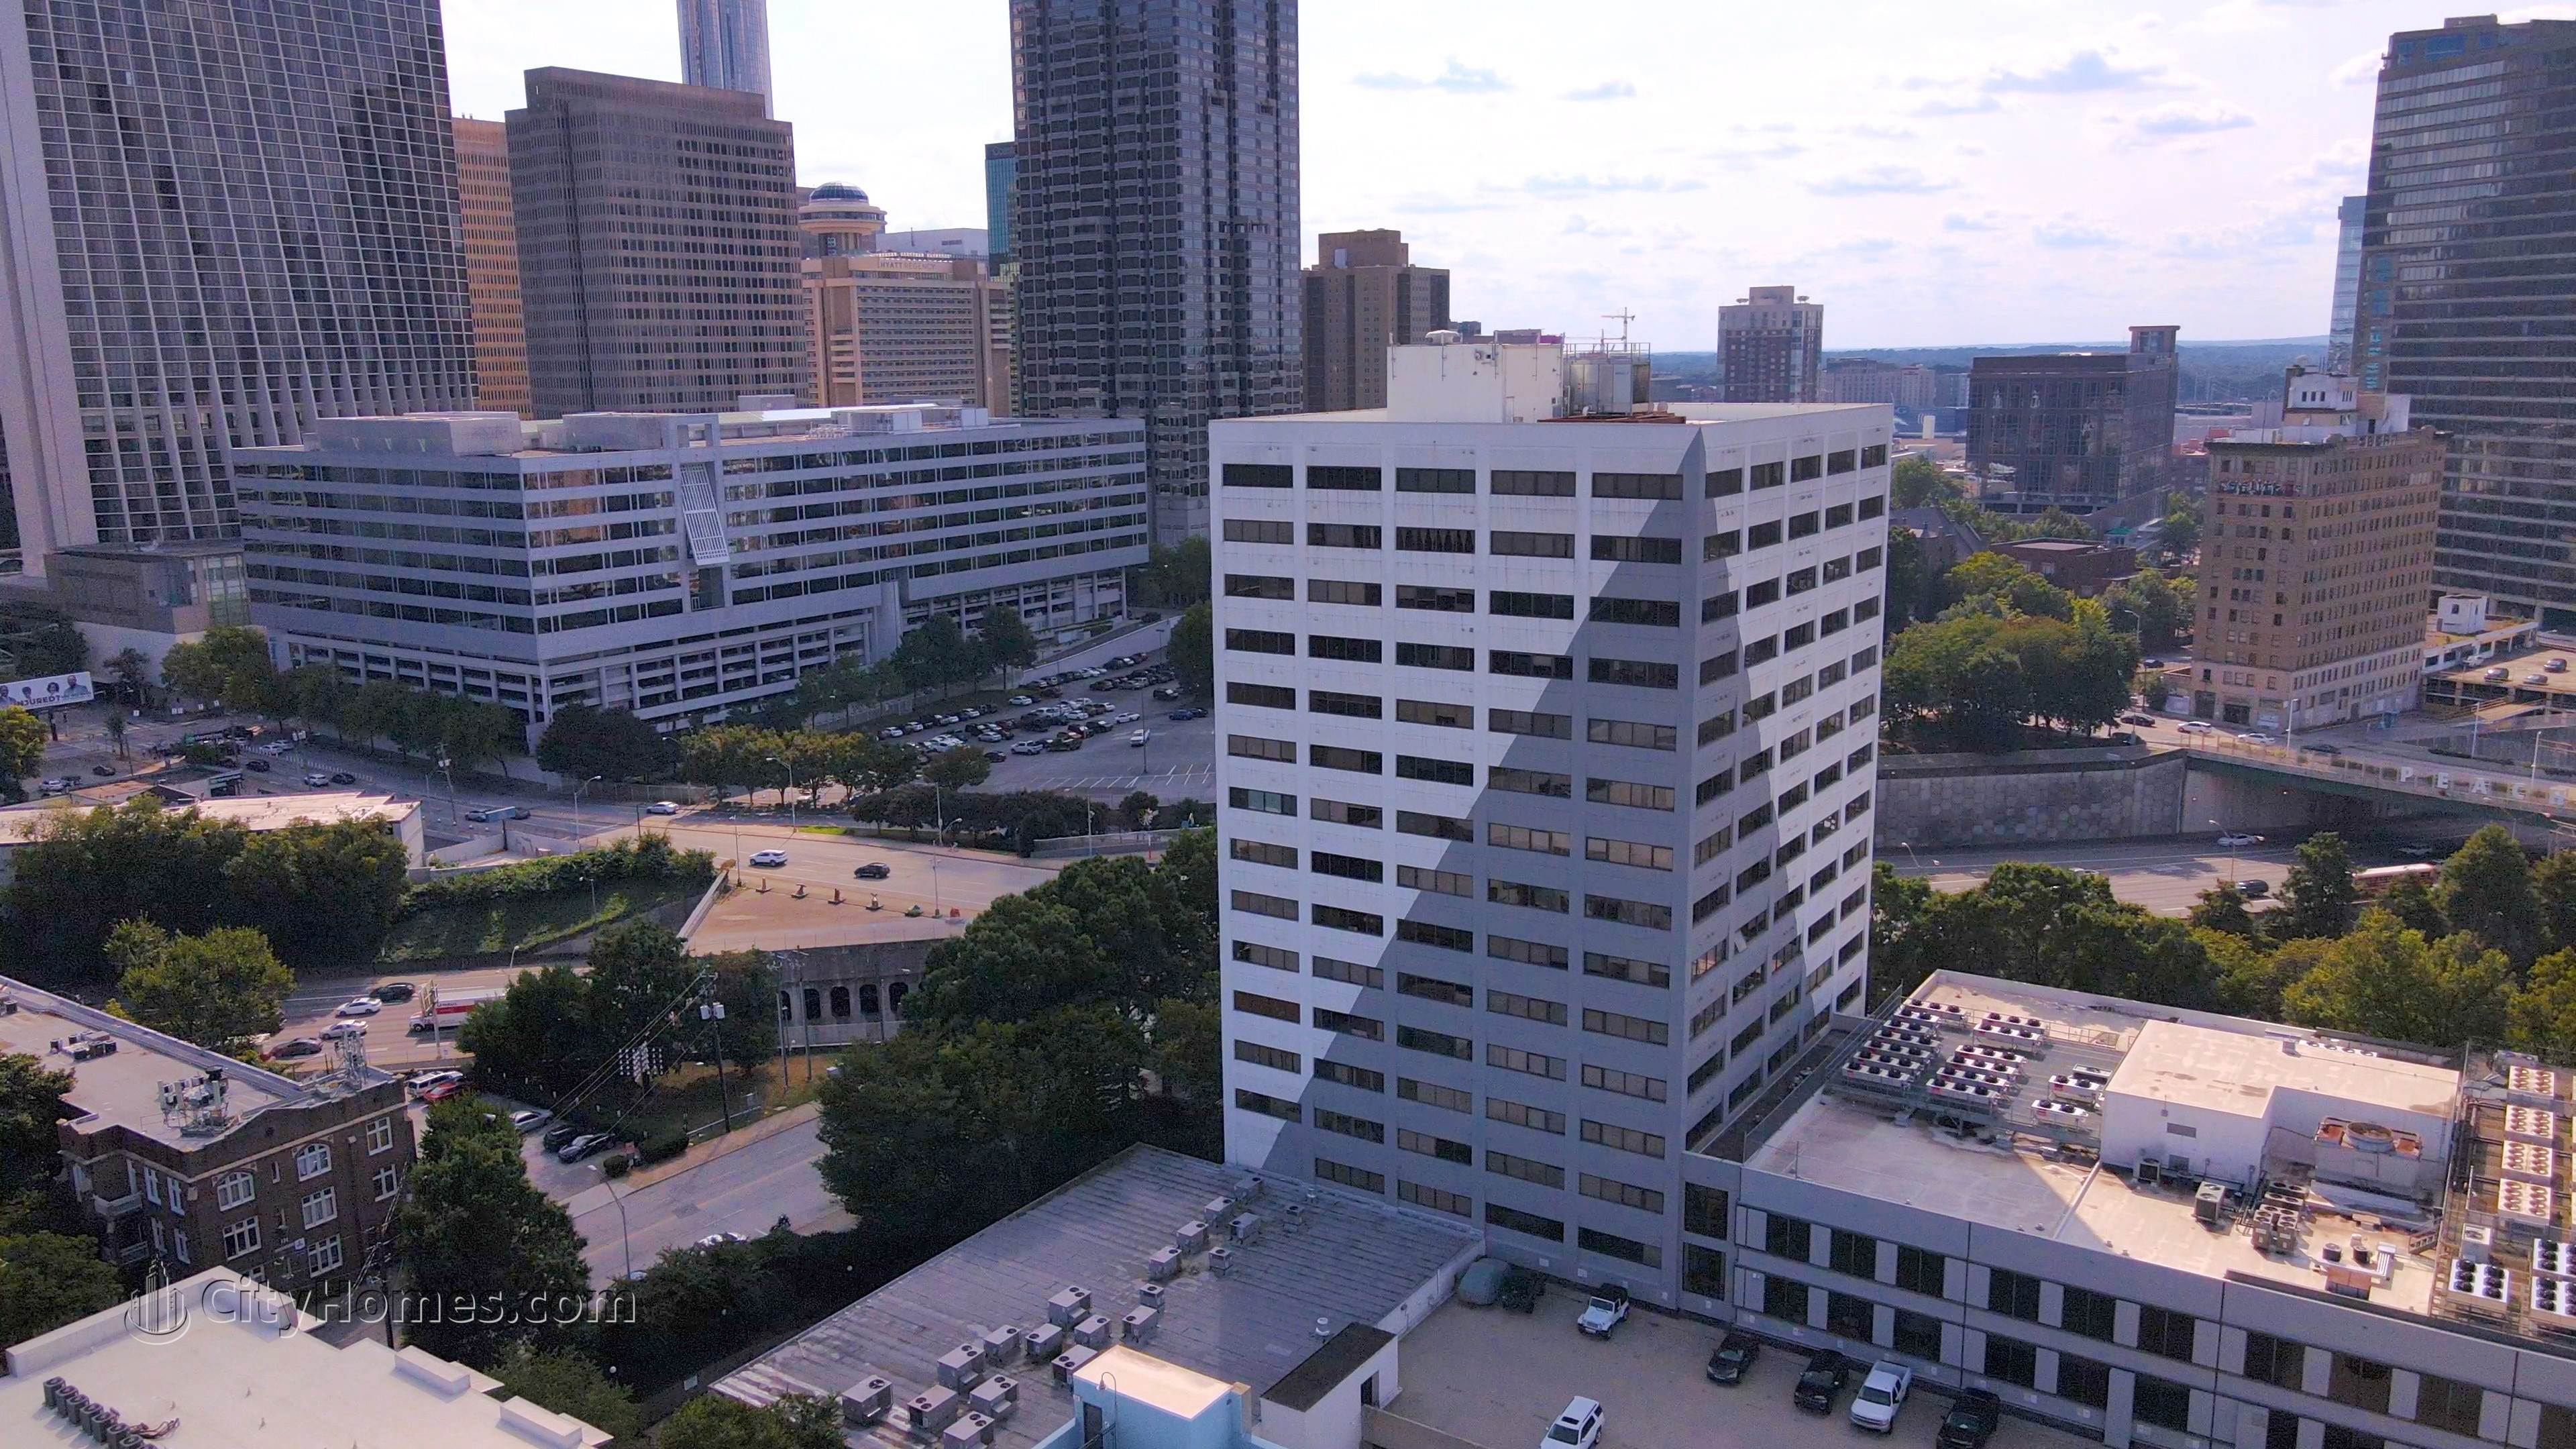 6. Renaissance Lofts edificio a 120 Ralph Mcgill Blvd NE, Downtown Atlanta, Atlanta, GA 30308